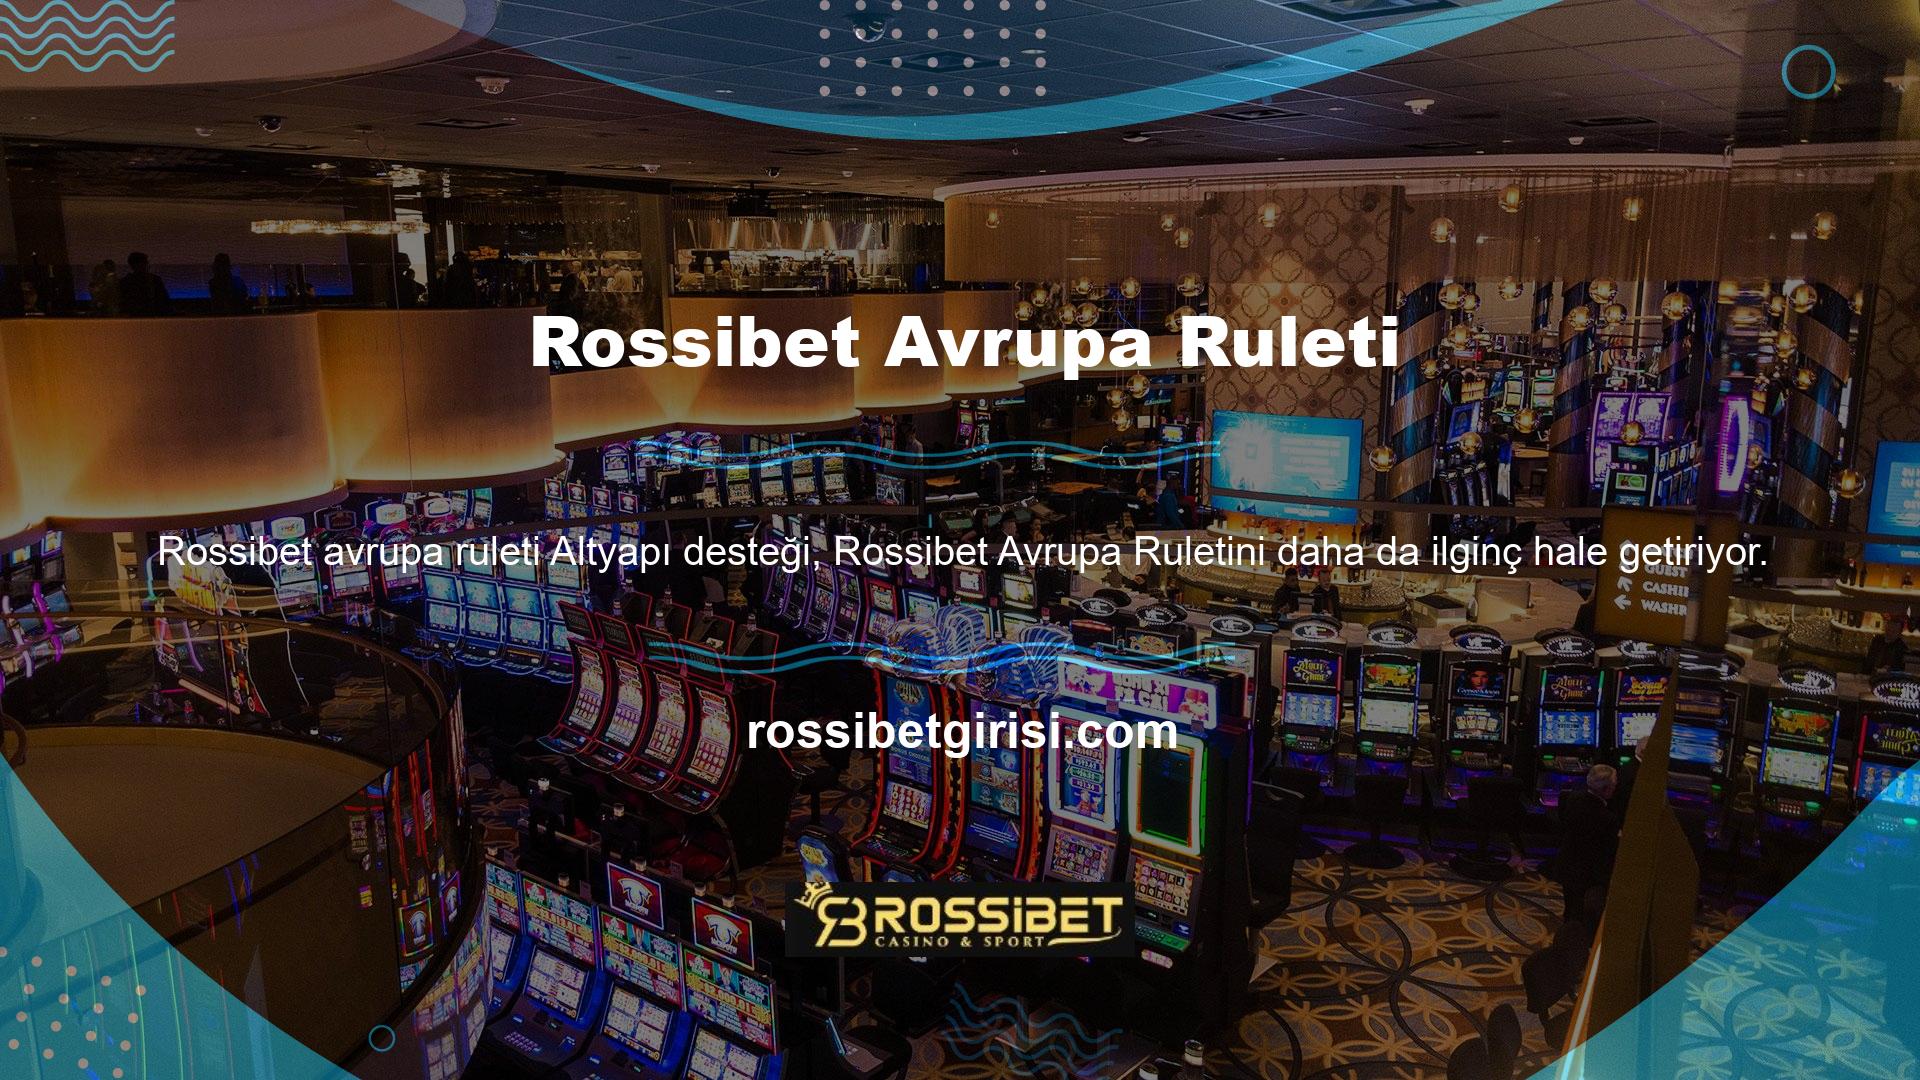 Casino sitelerindeki rulet oyunları günün her saati oynanacak şekilde tasarlanmıştır